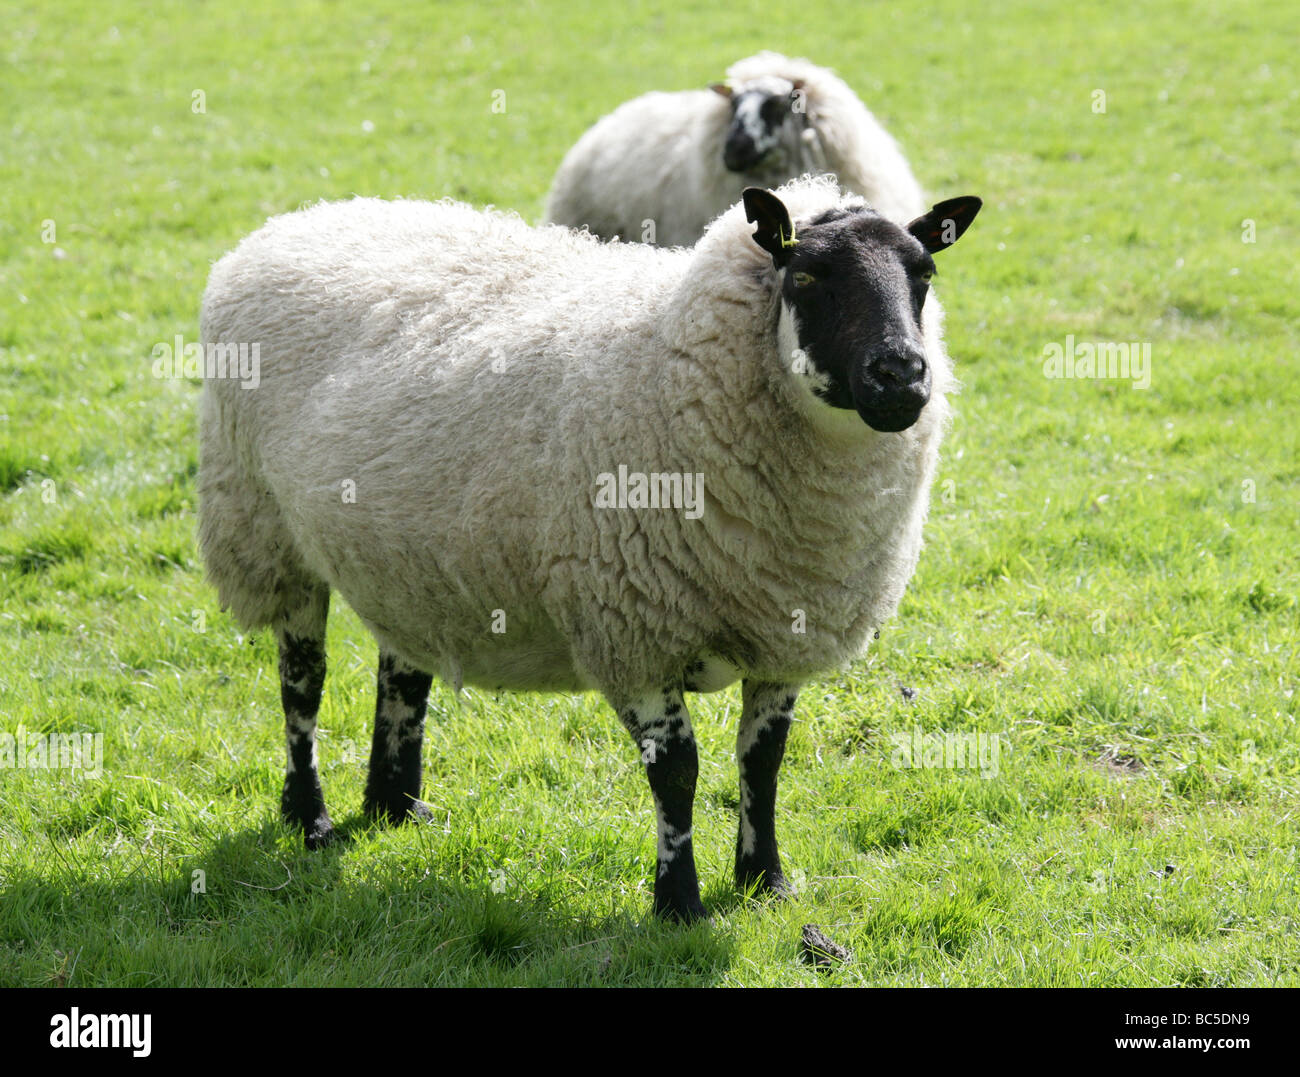 Beulah cara moteado, oveja de raza de ovejas domésticas, Ovis aries, Caprinae, Bovidae. Foto de stock